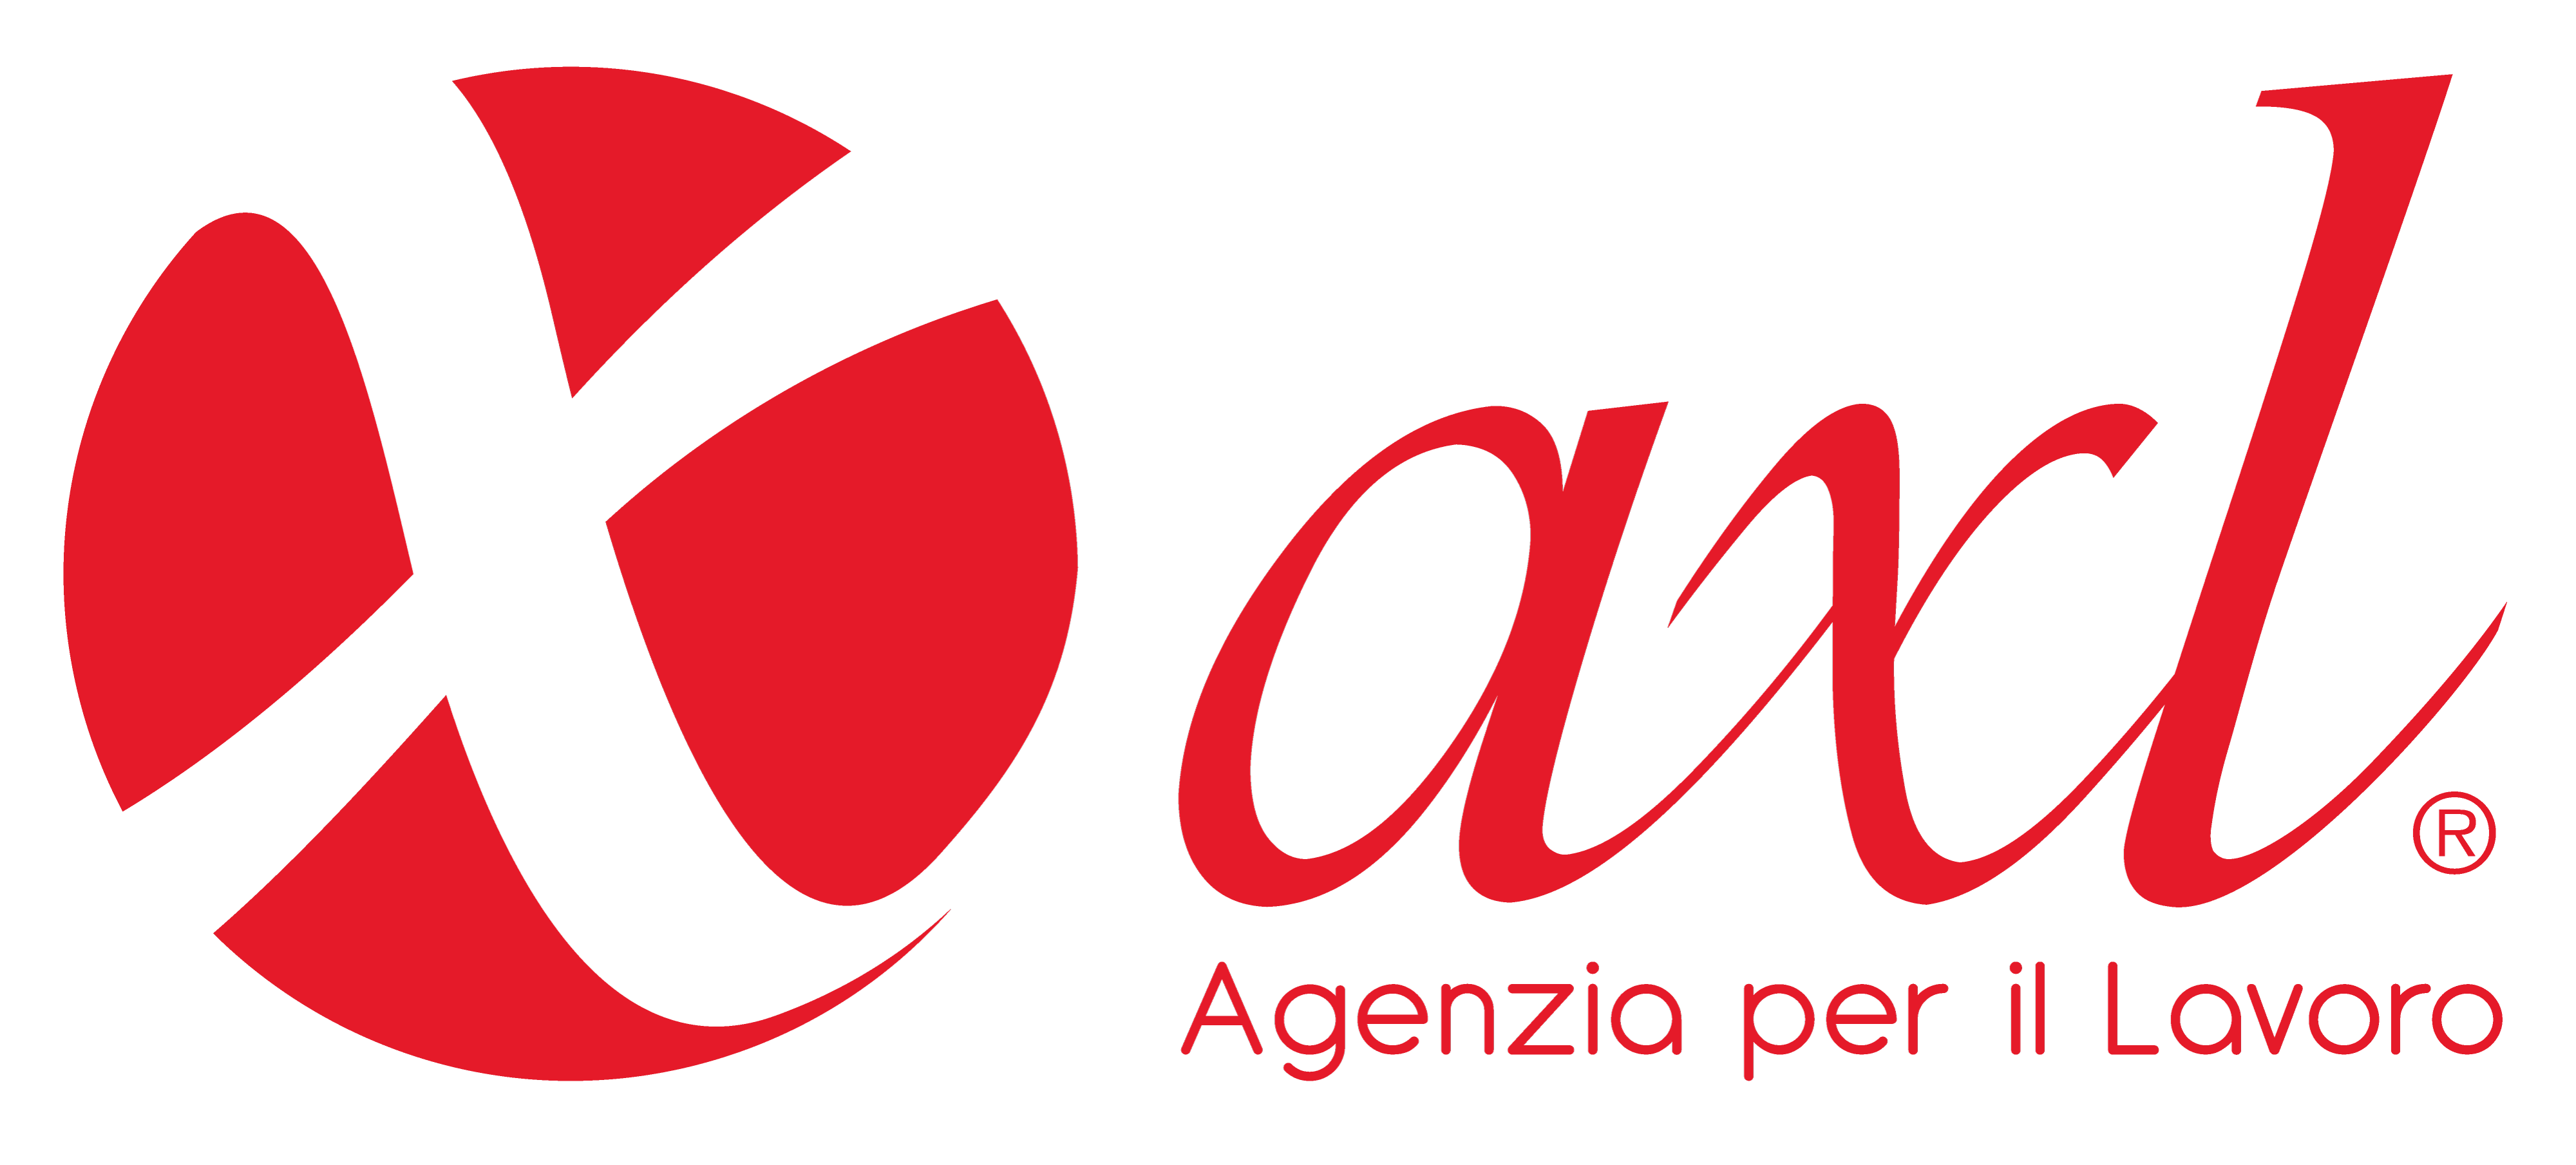 logo AXL - Agenzia per il lavoro